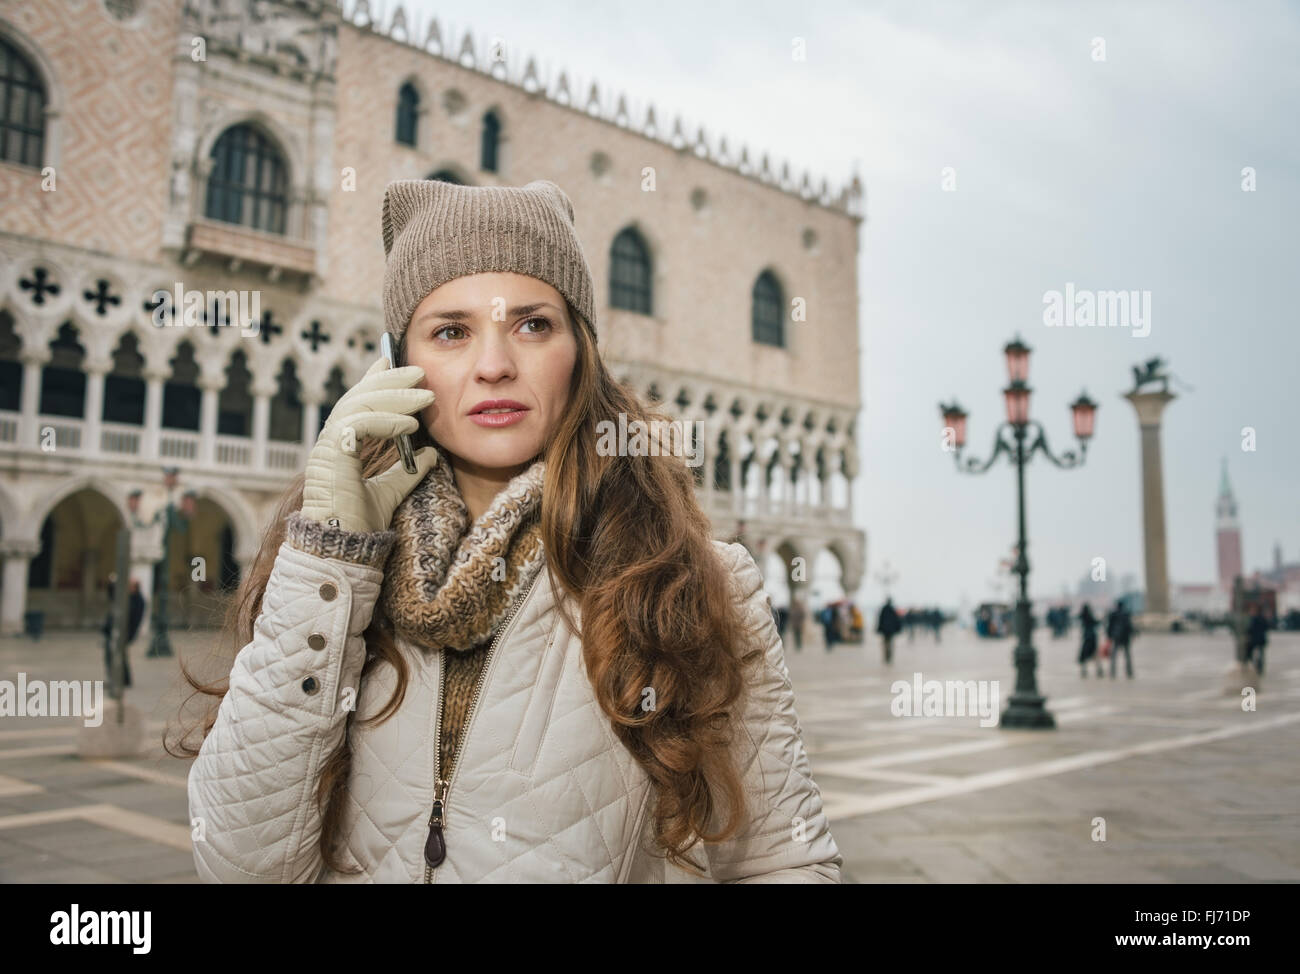 Venise, Italie charmant peut aider à tirer le meilleur parti de votre prochaine escapade d'hiver. Jeune femme parlant de tourisme téléphone mobile sur Saint Mar Banque D'Images